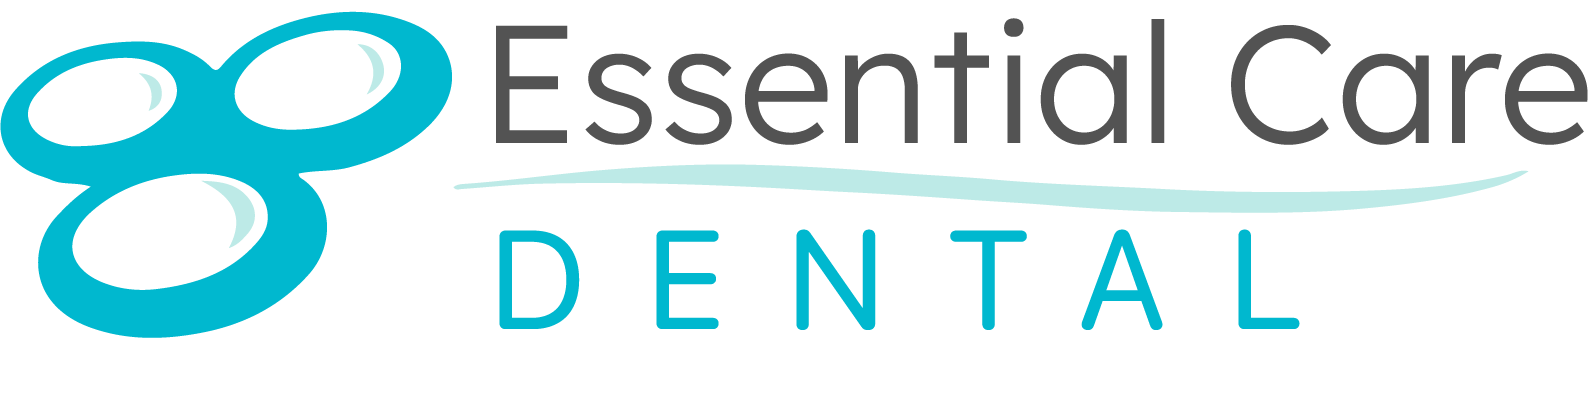 Essential Care Dental logo - Home